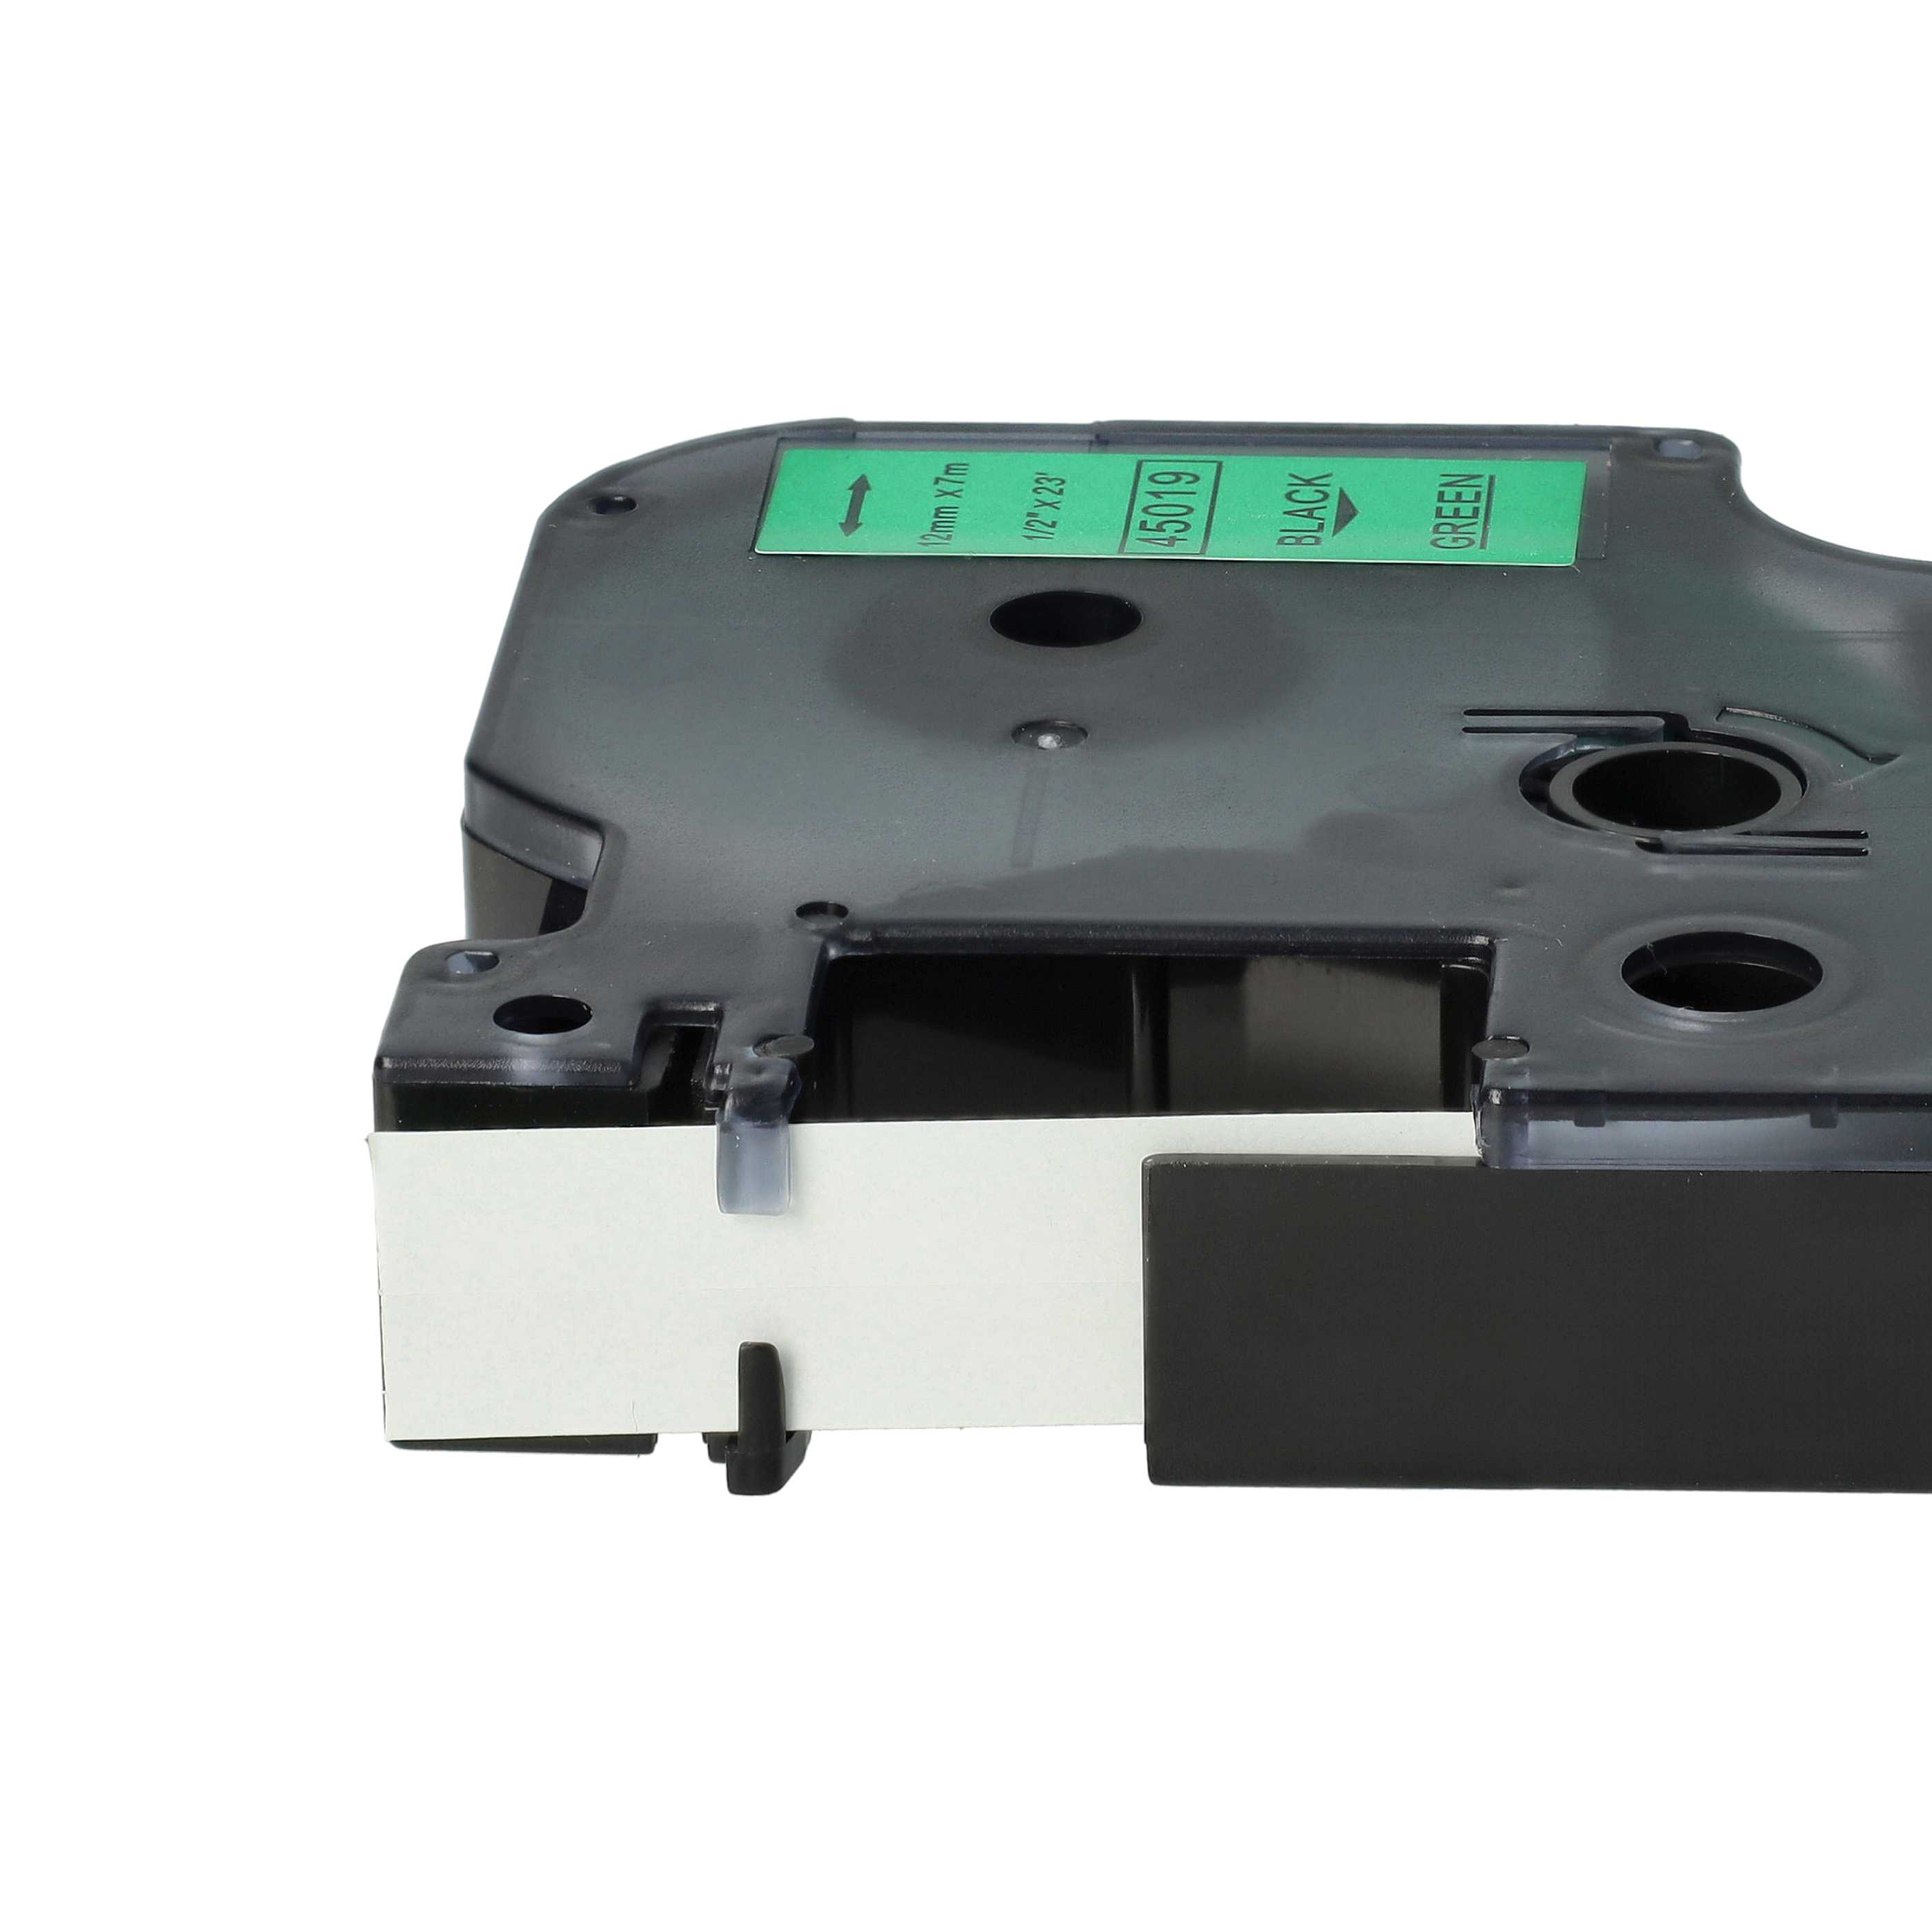 Cassetta nastro sostituisce Dymo 45019, D1 per etichettatrice Dymo 12mm nero su verde